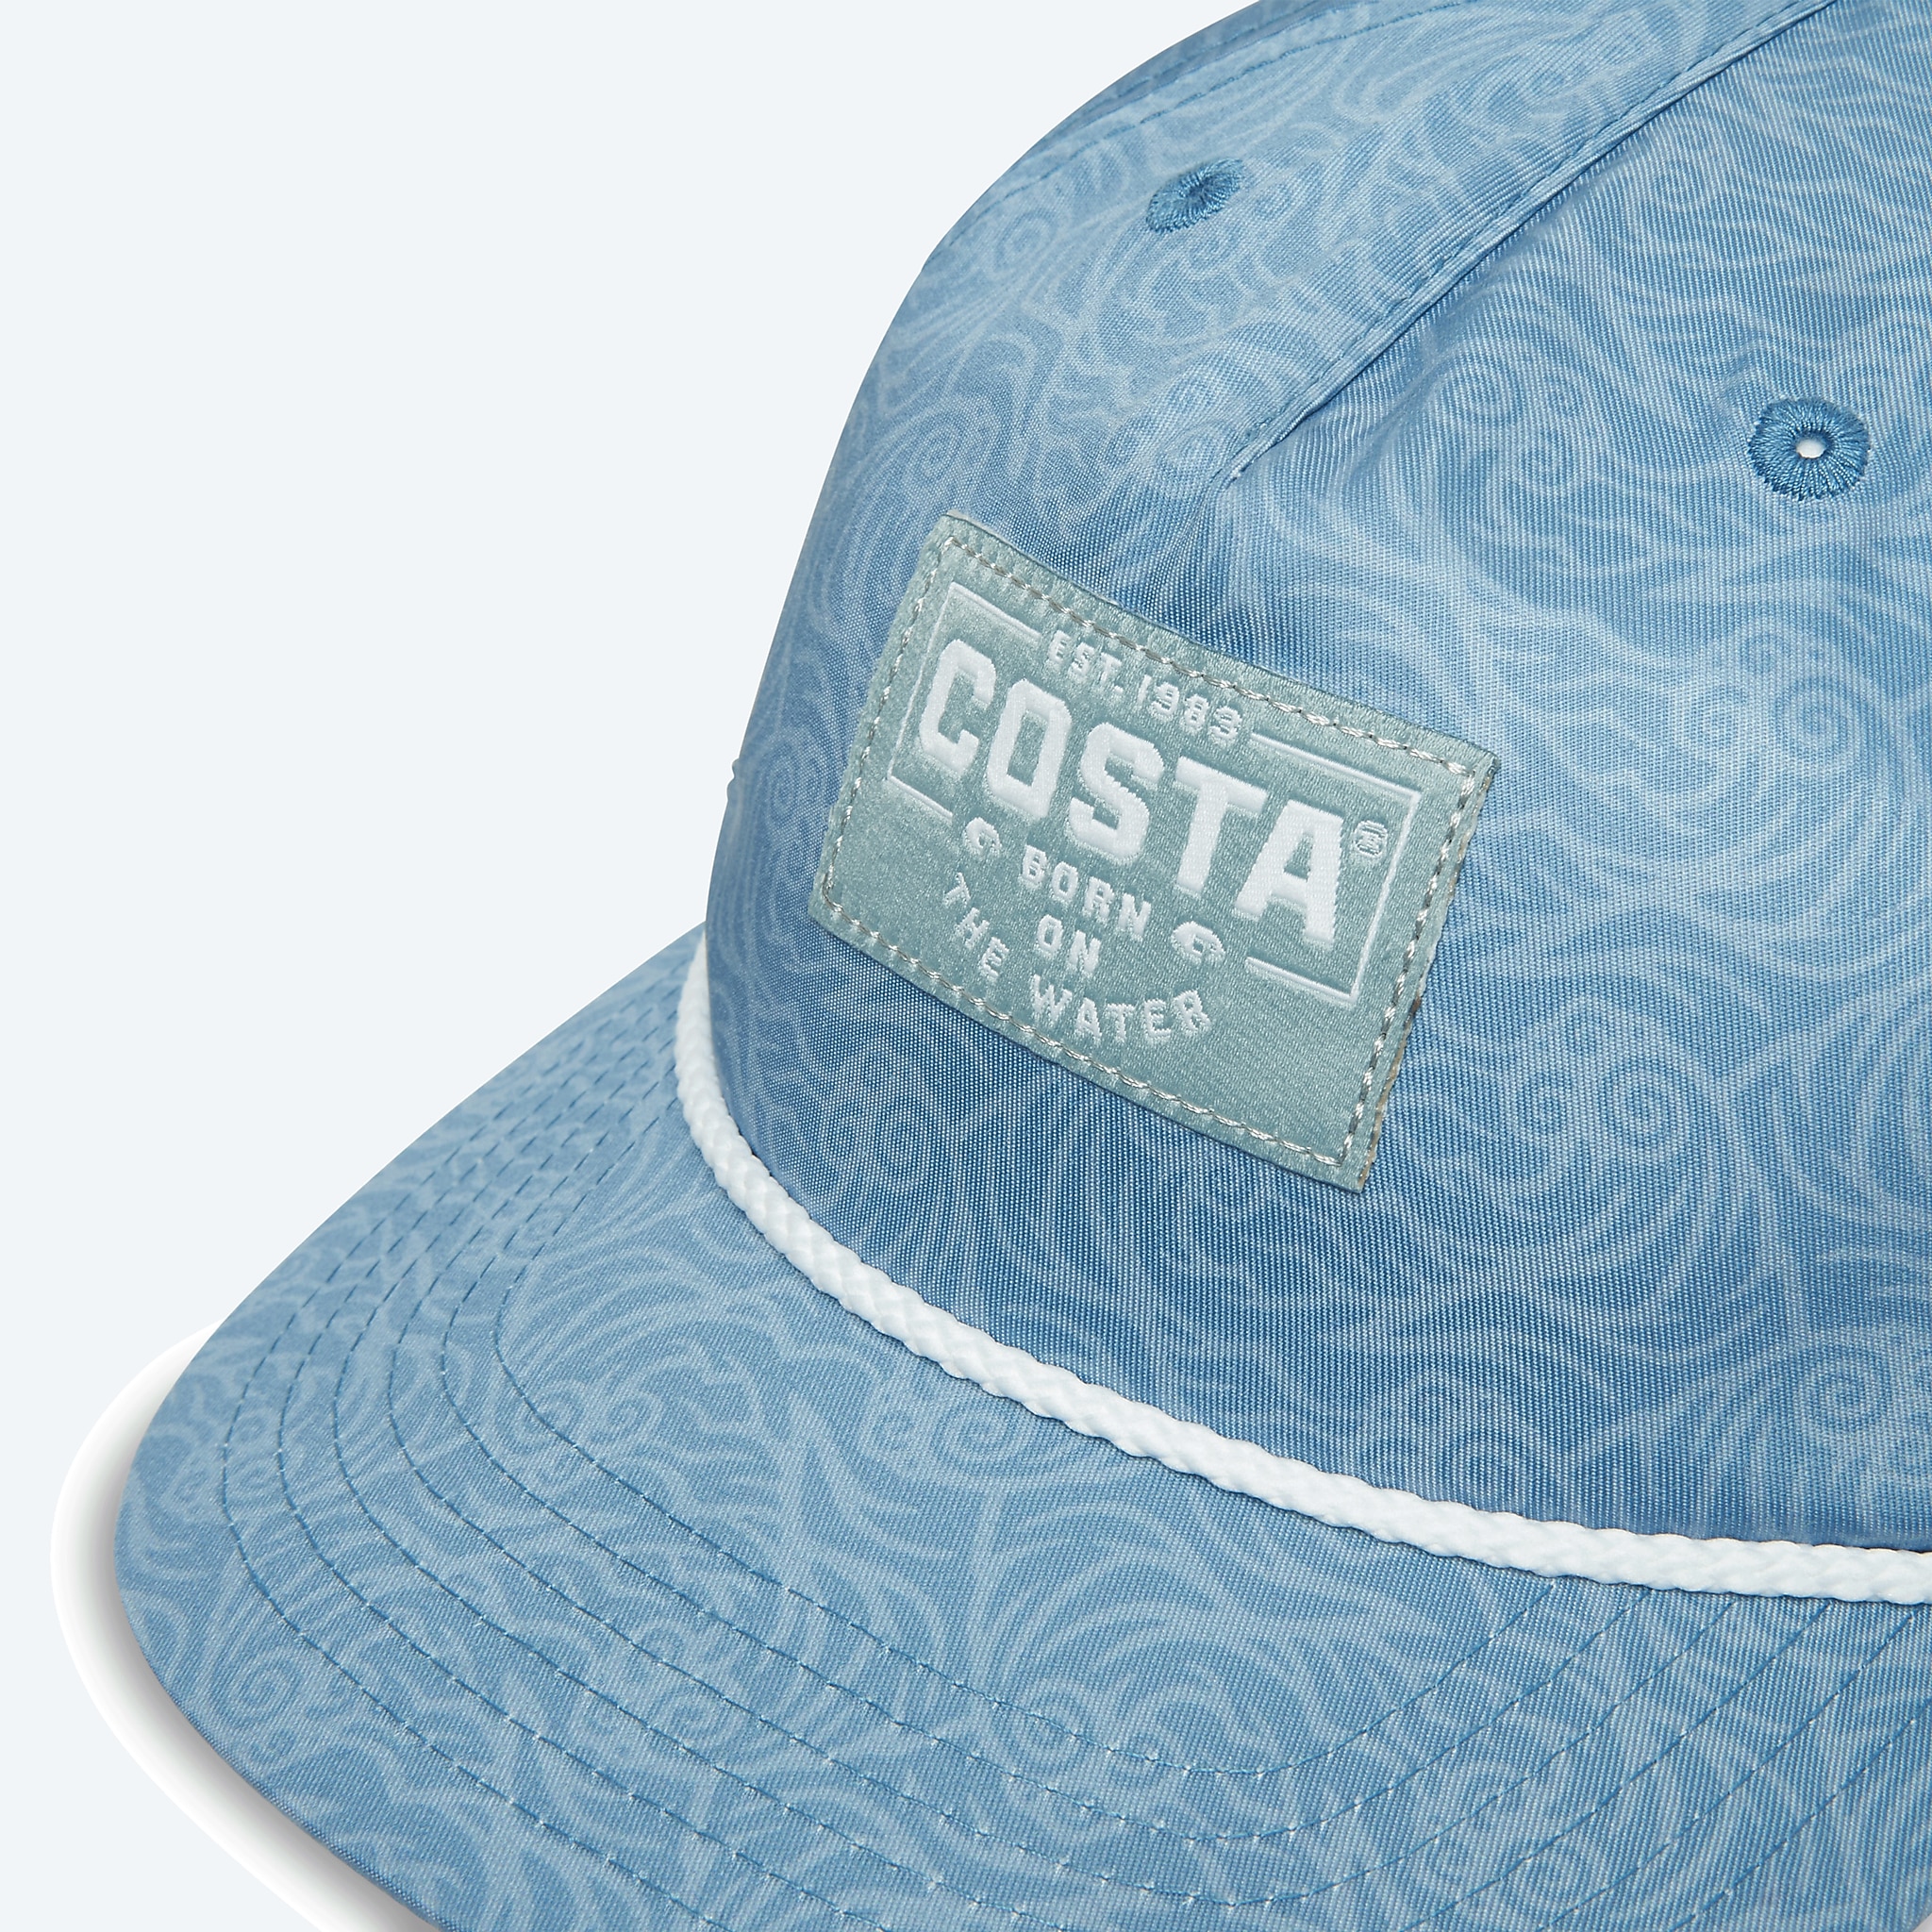 Costa Del Mar Flat Brim Hat